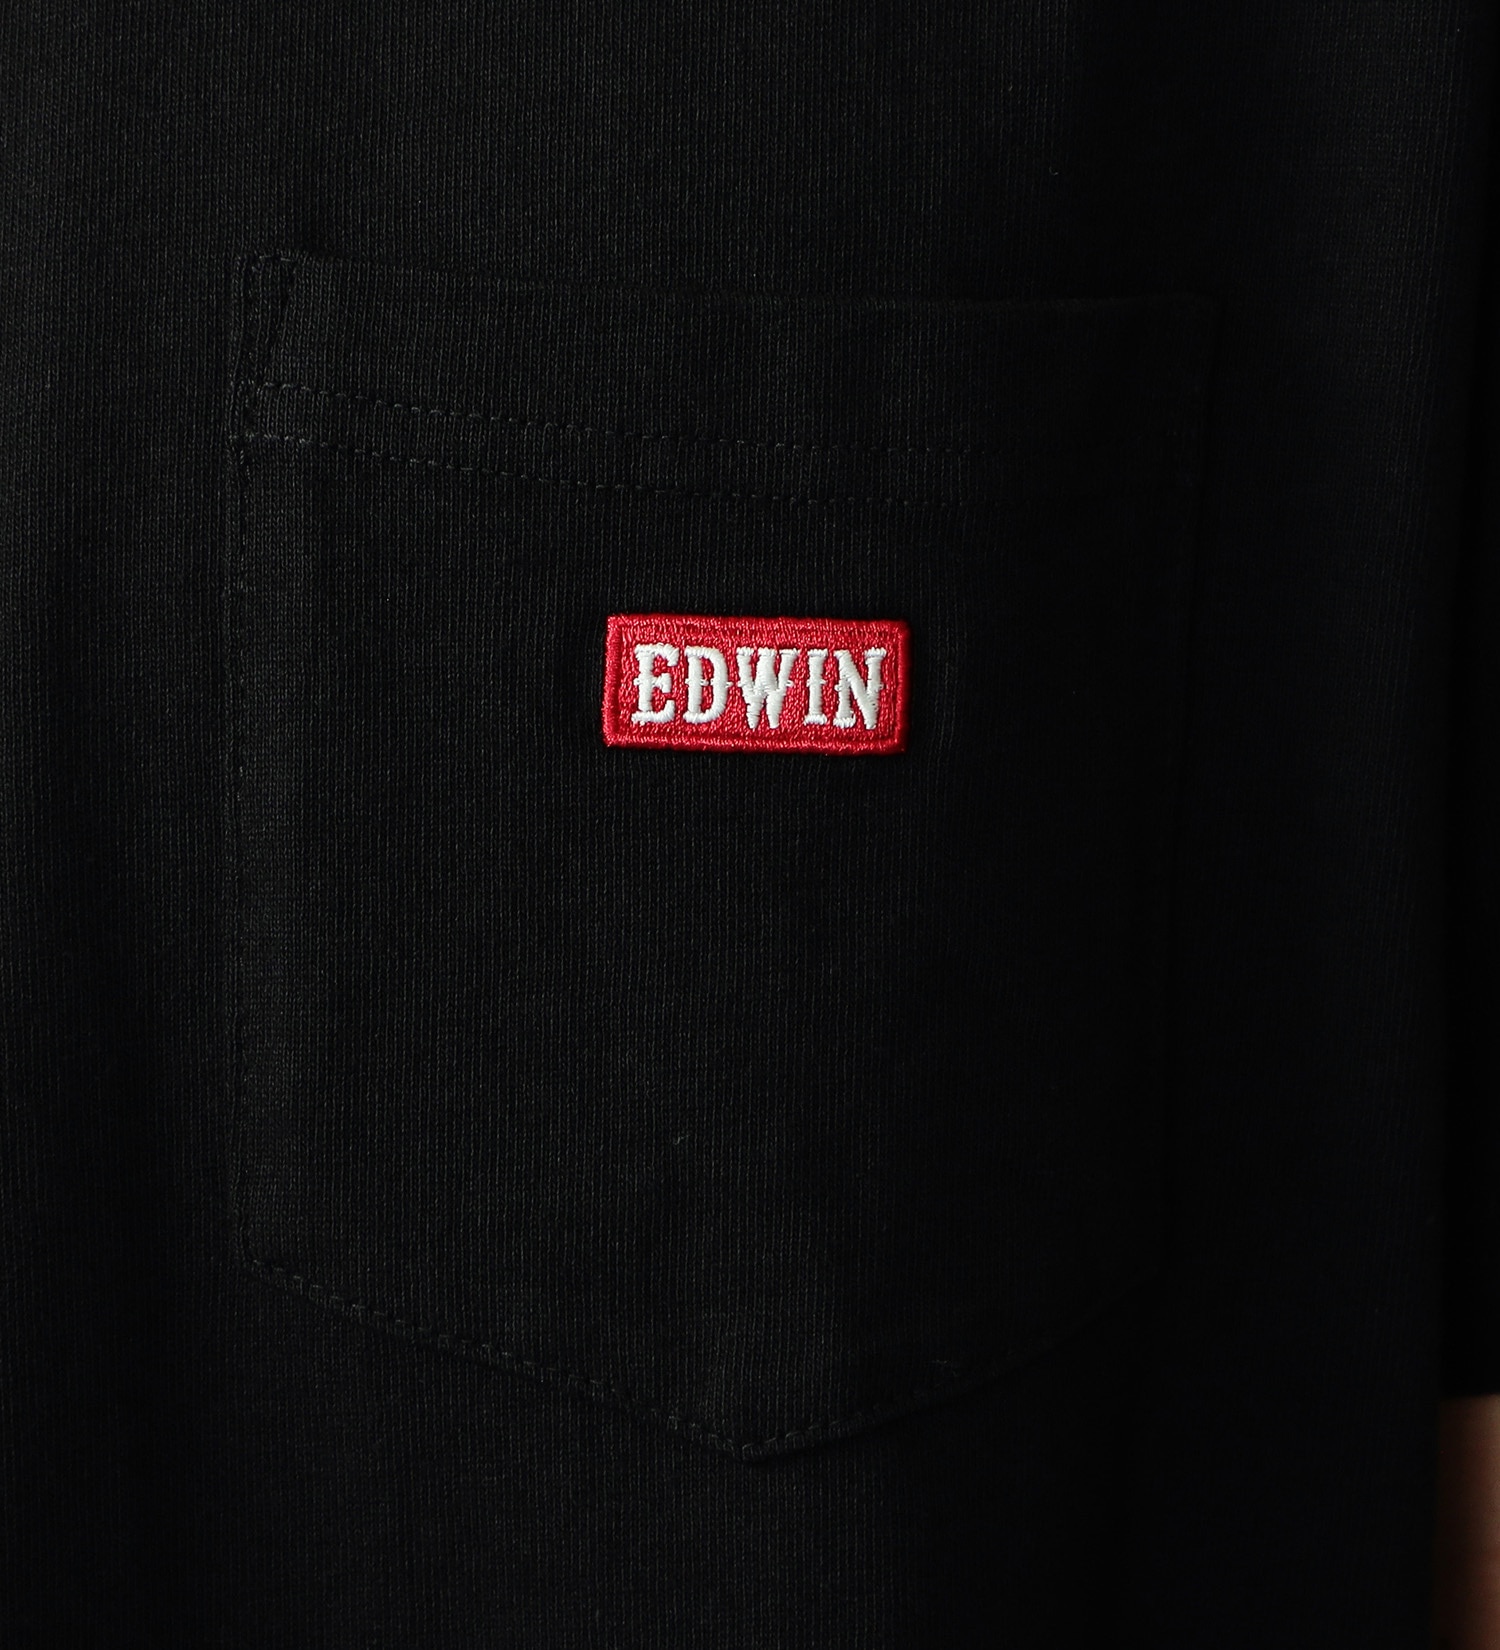 EDWIN(エドウイン)のポケットボックスロゴ半袖Tシャツ【アウトレット店舗・WEB限定】|トップス/Tシャツ/カットソー/メンズ|ブラック